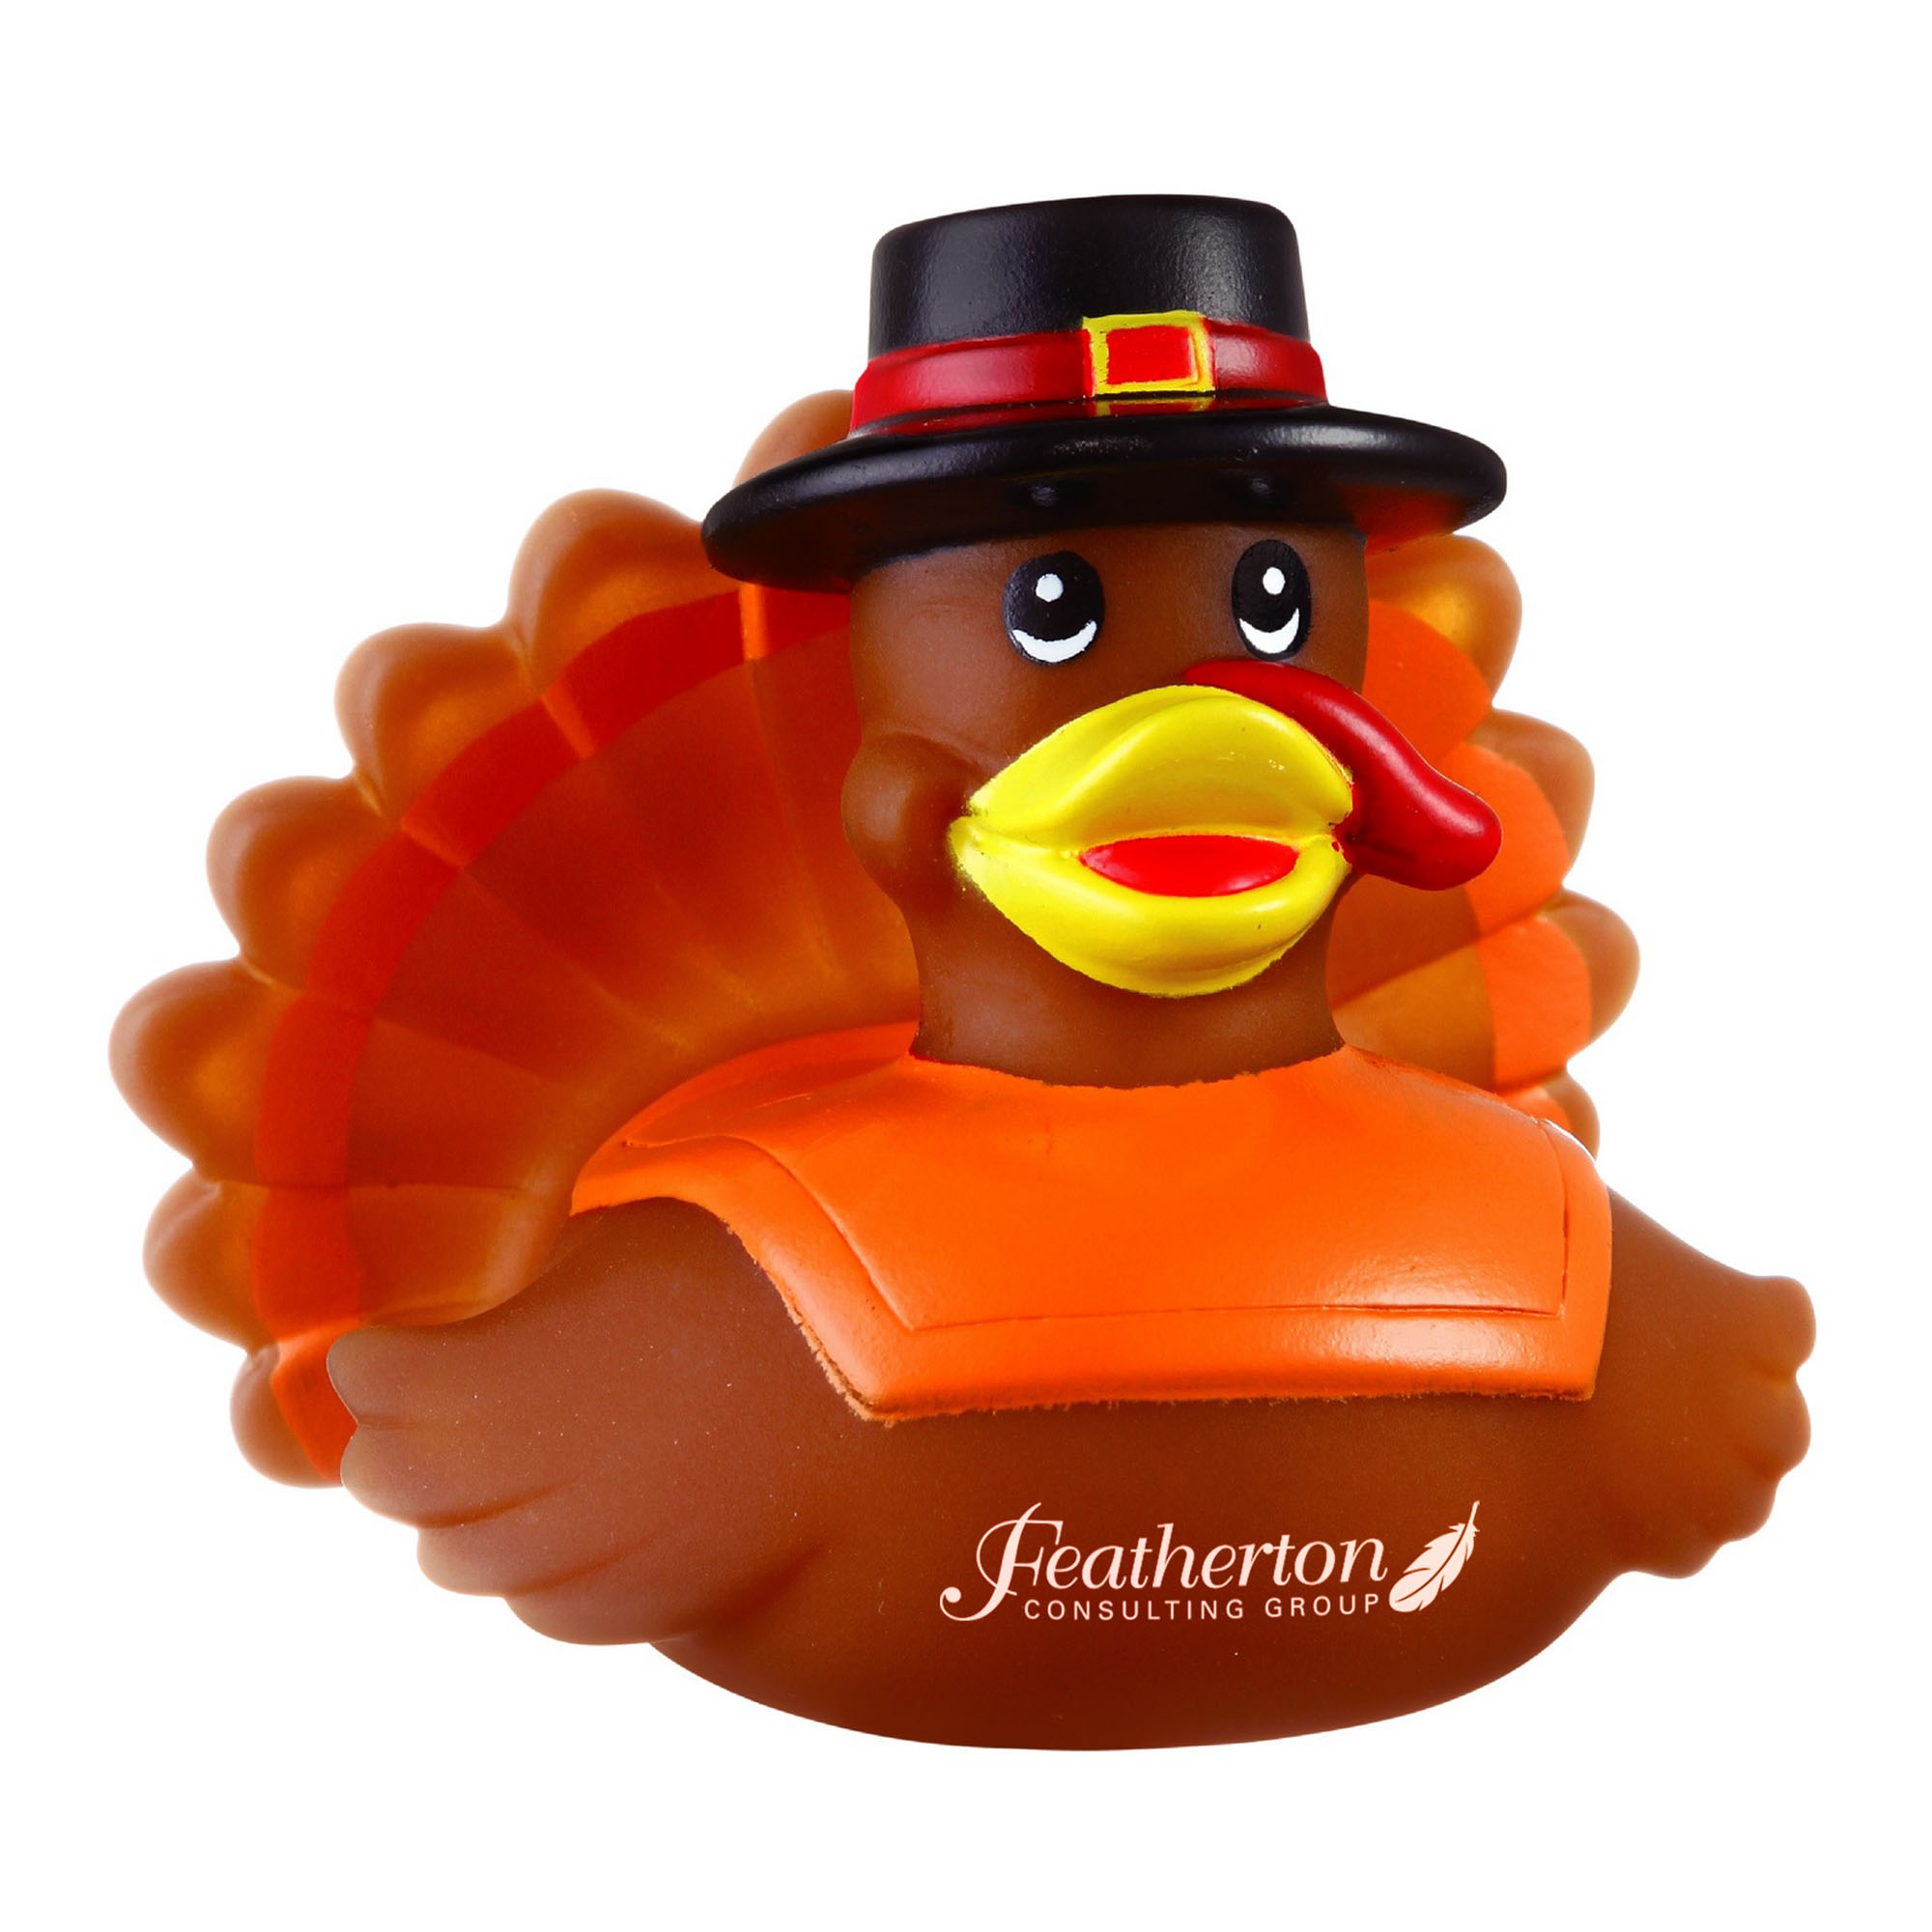 Promotional Rubber Festive Turkey Duck©